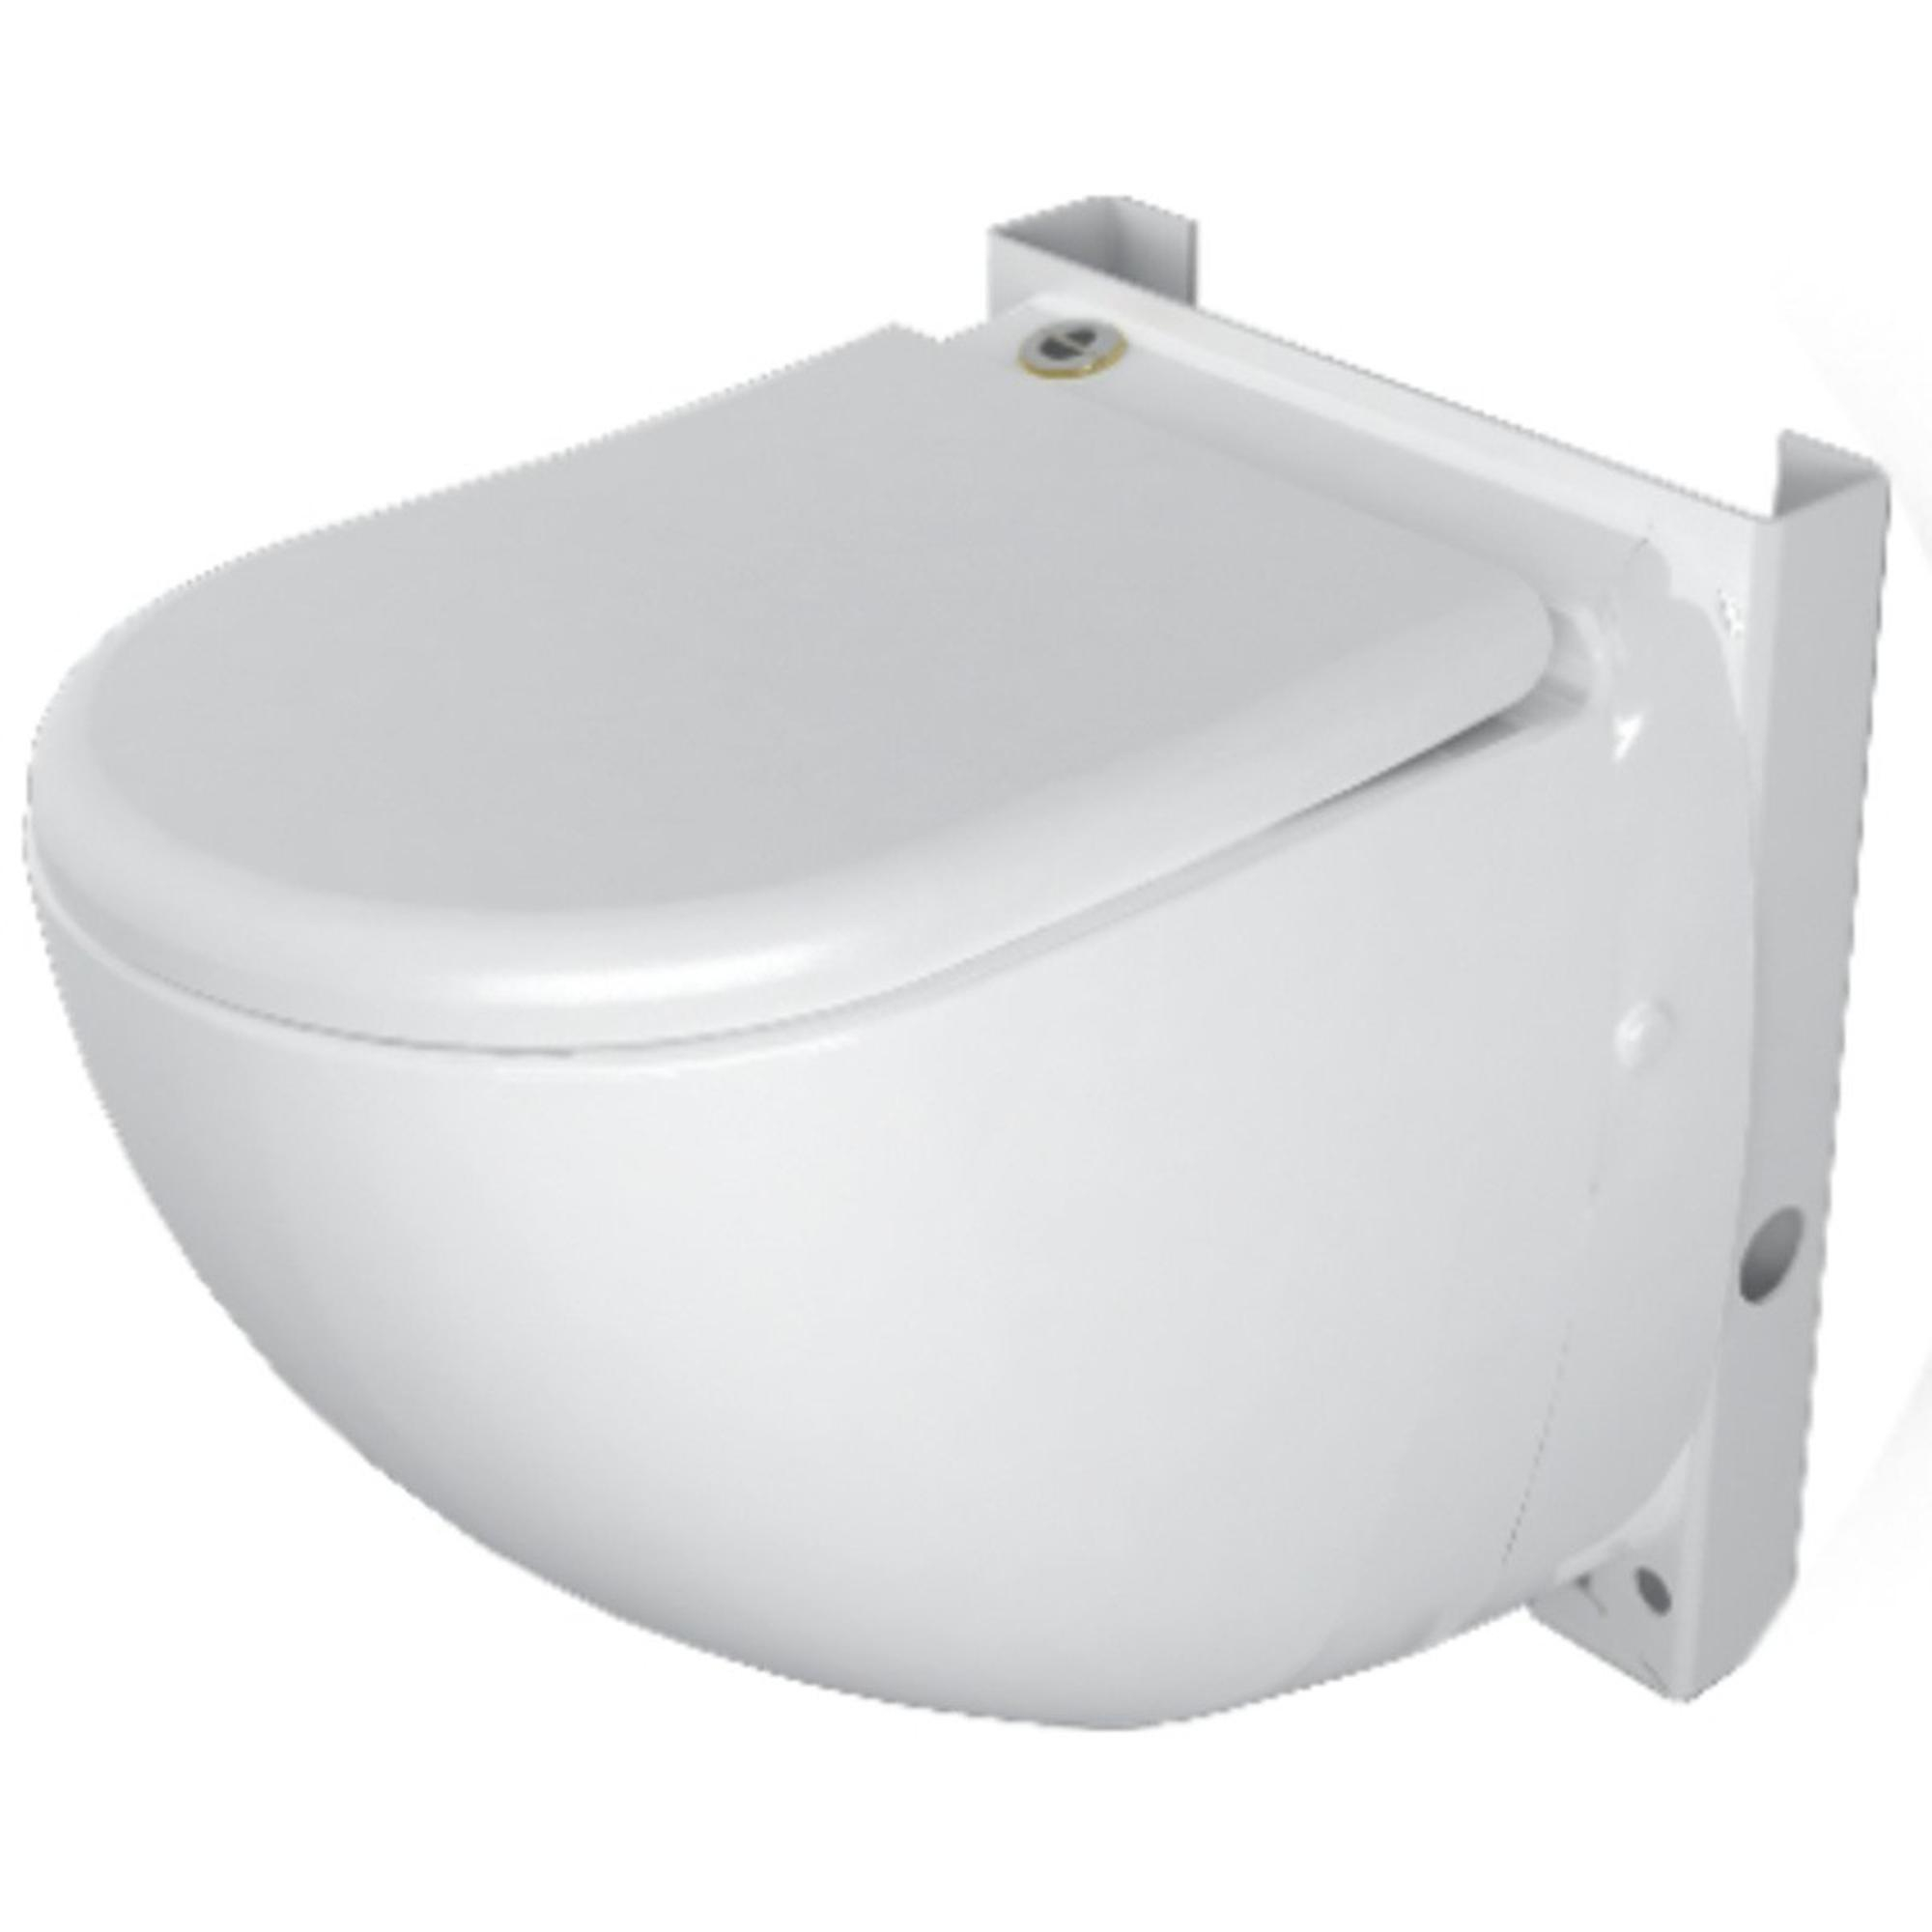 SANICOMPACT 43 SILENCE ECO+ - WC sur pied avec broyeur intégré